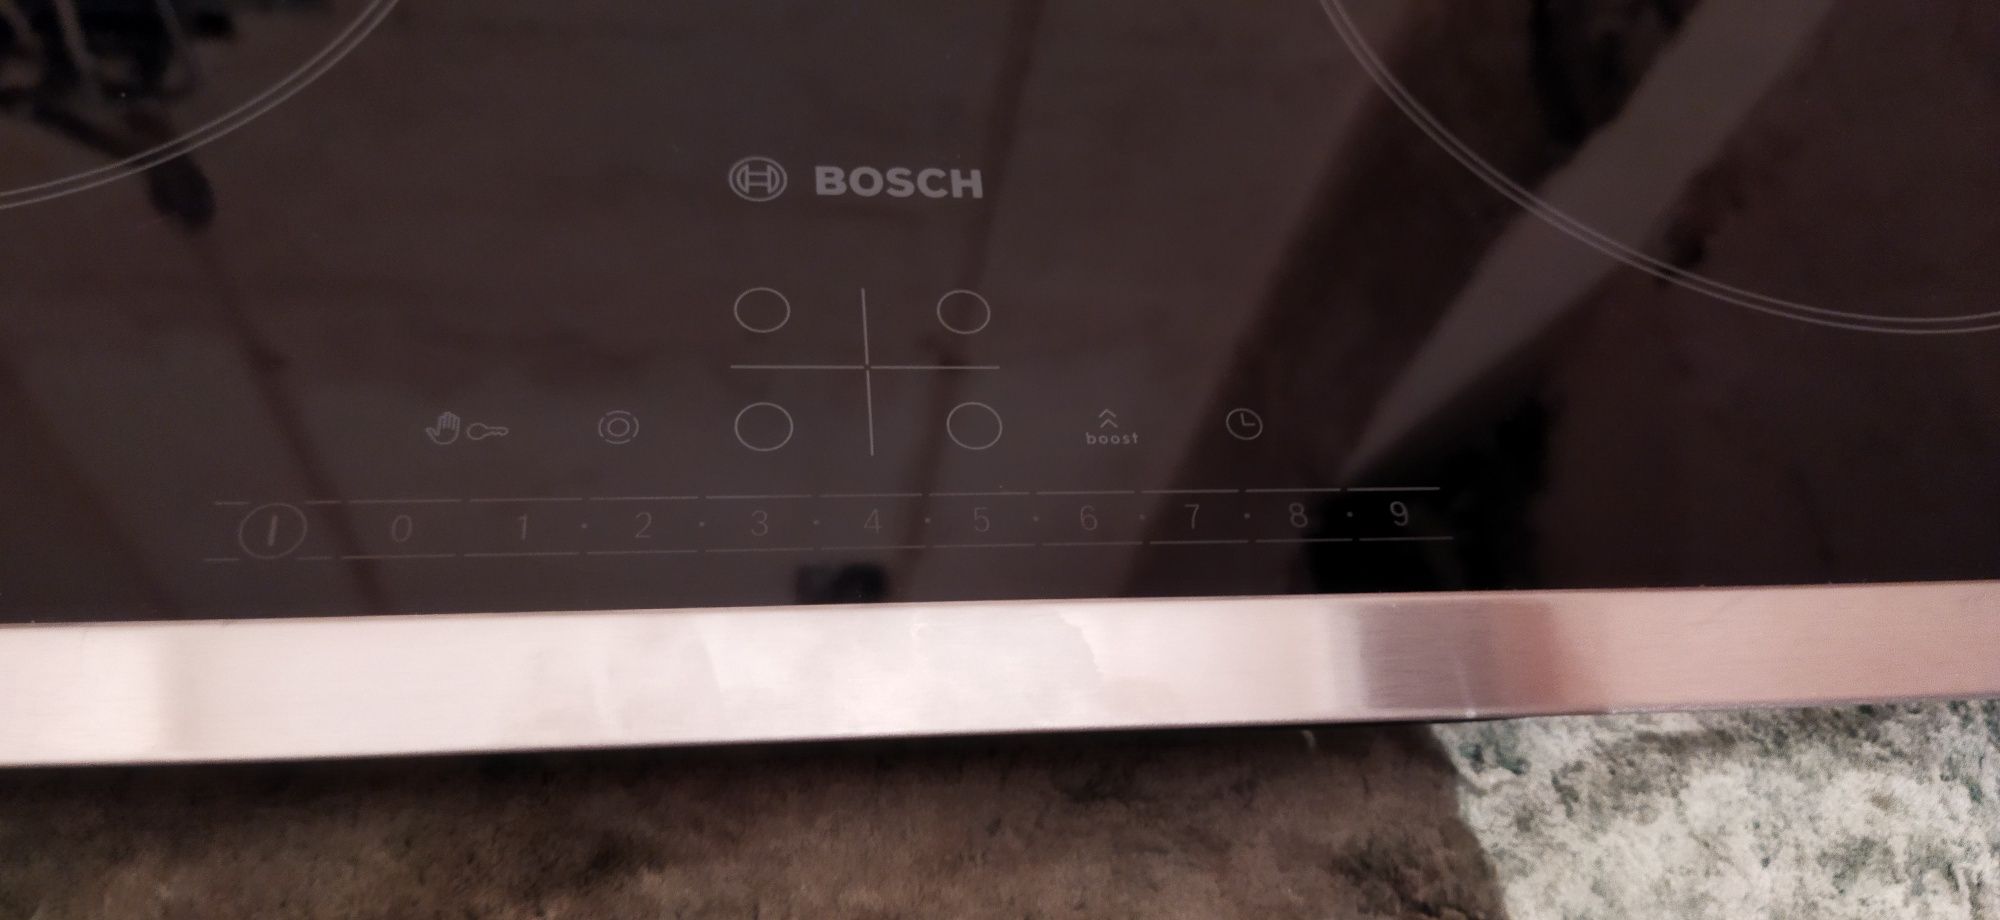 Ворочная панель Bosch (электрическая)